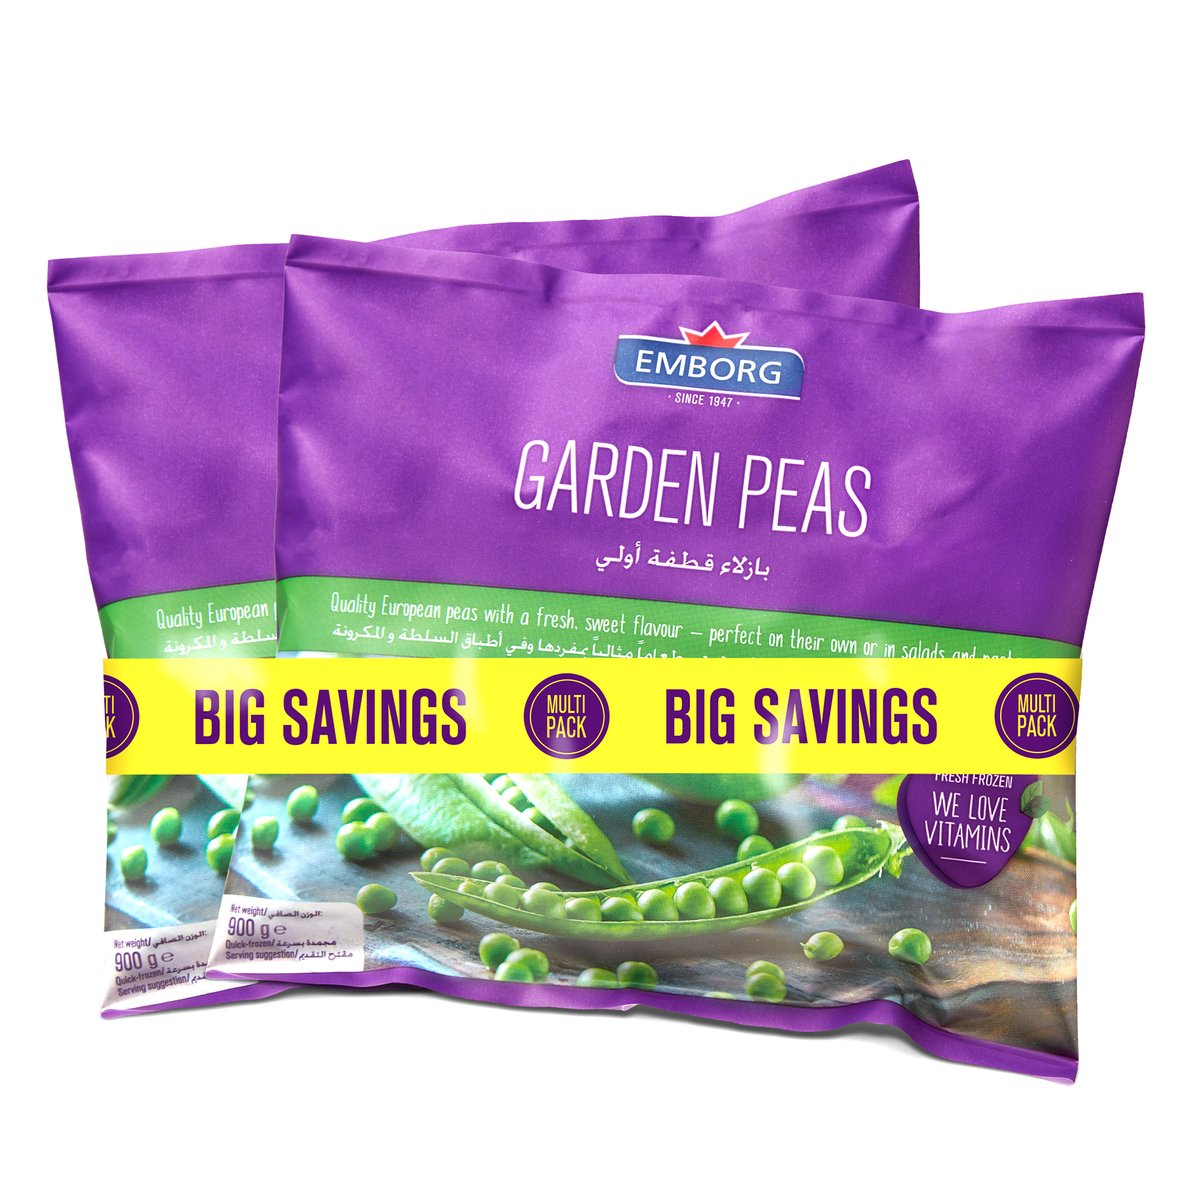 Emborg Garden Peas Value Pack 2 x 900 g